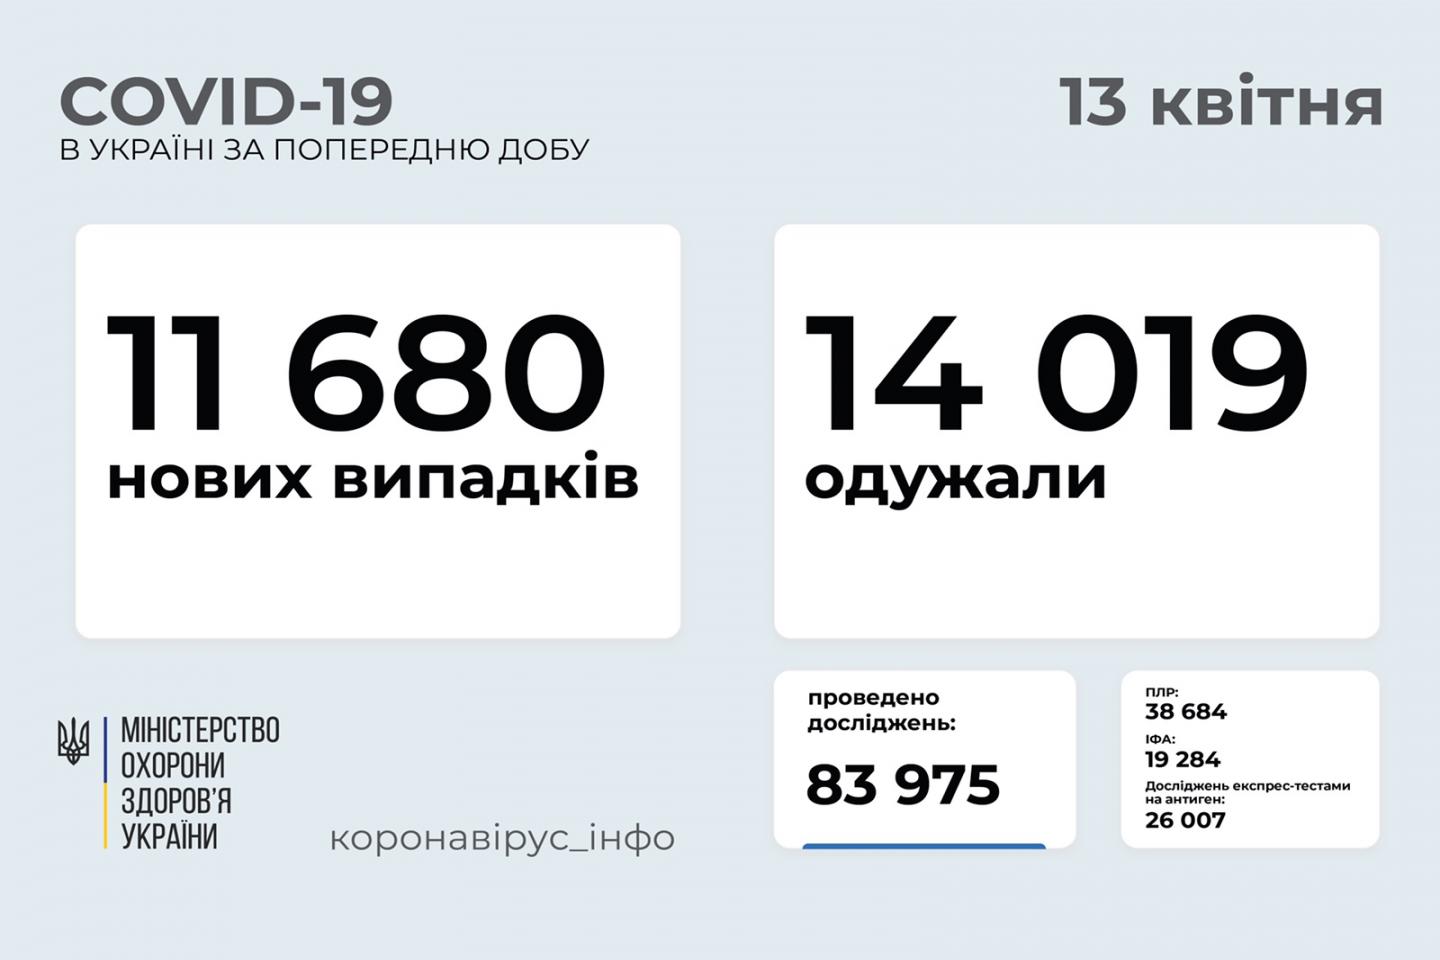 http://dunrada.gov.ua/uploadfile/archive_news/2021/04/13/2021-04-13_357/images/images-42905.jpg